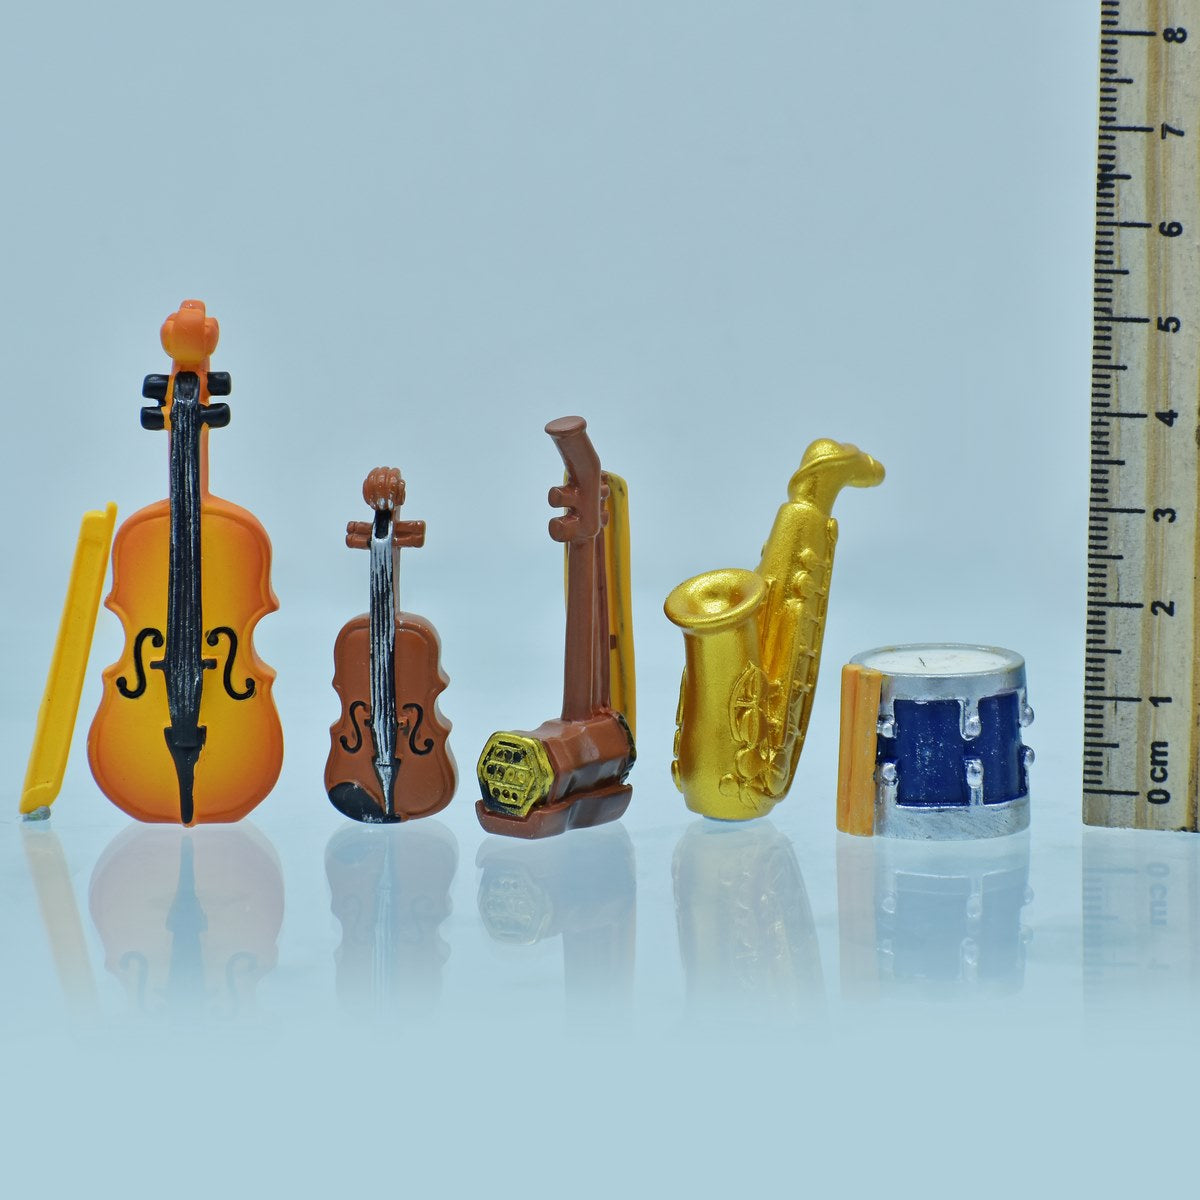 jags-mumbai Miniature Miniature Model Musical Instrument Set (5 Pieces)